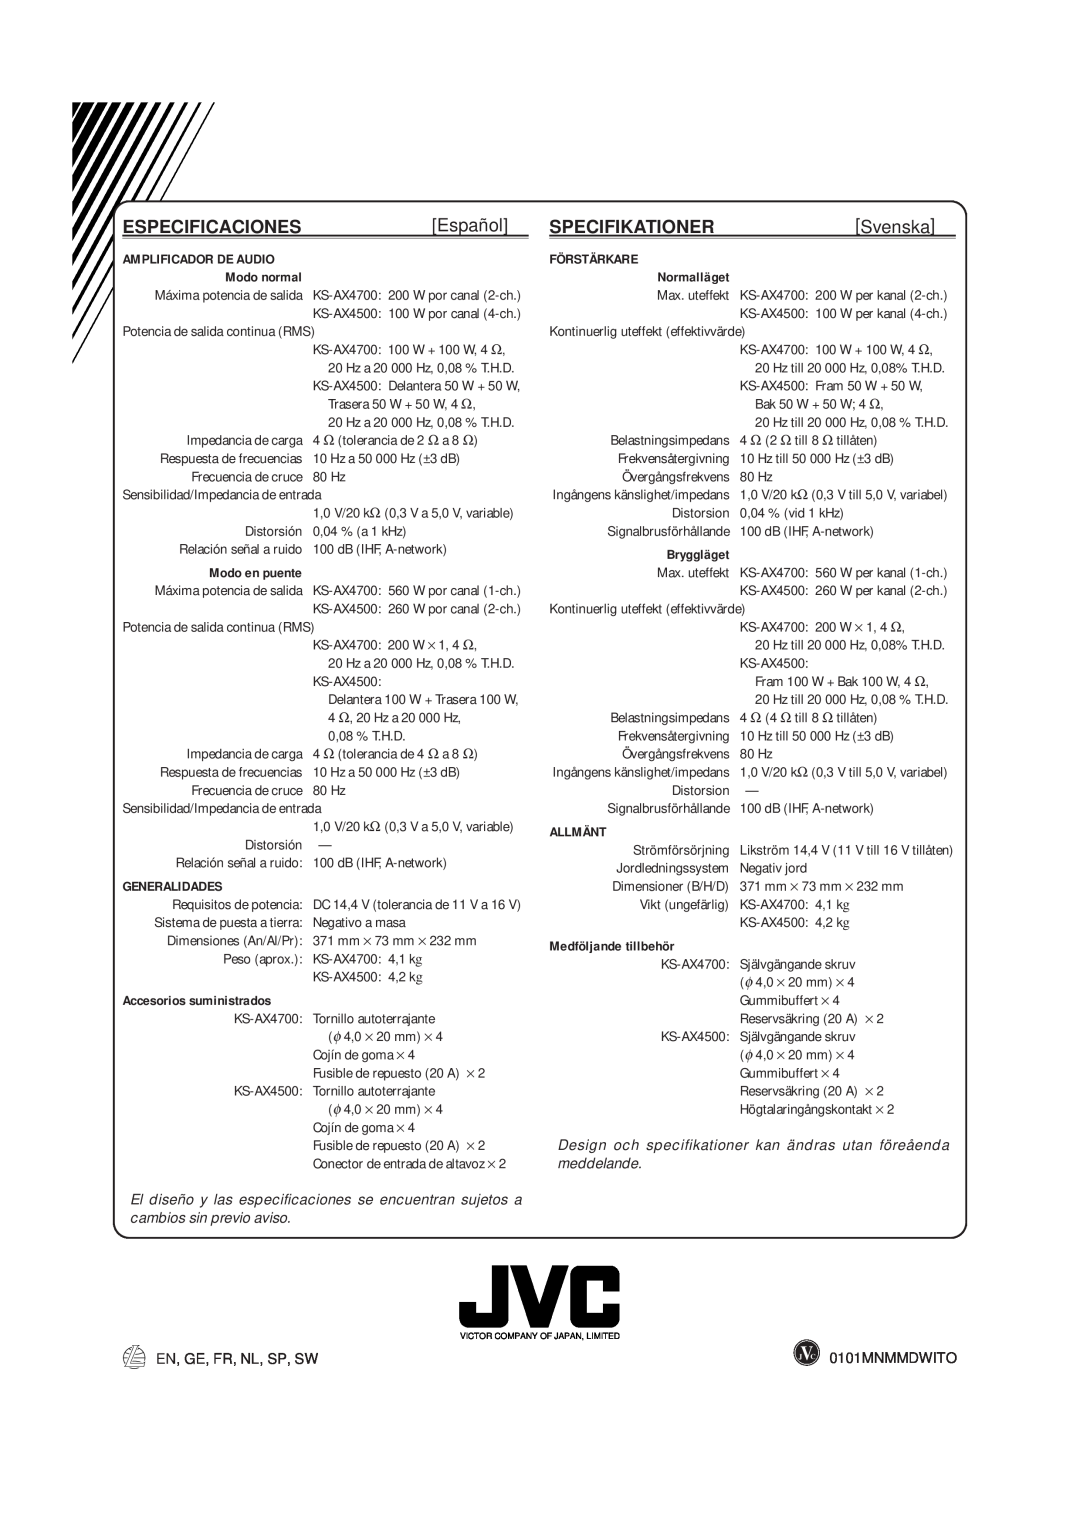 JVC KS-AX4700, KS-AX4500 manual Español, Specifikationer, Svenska 